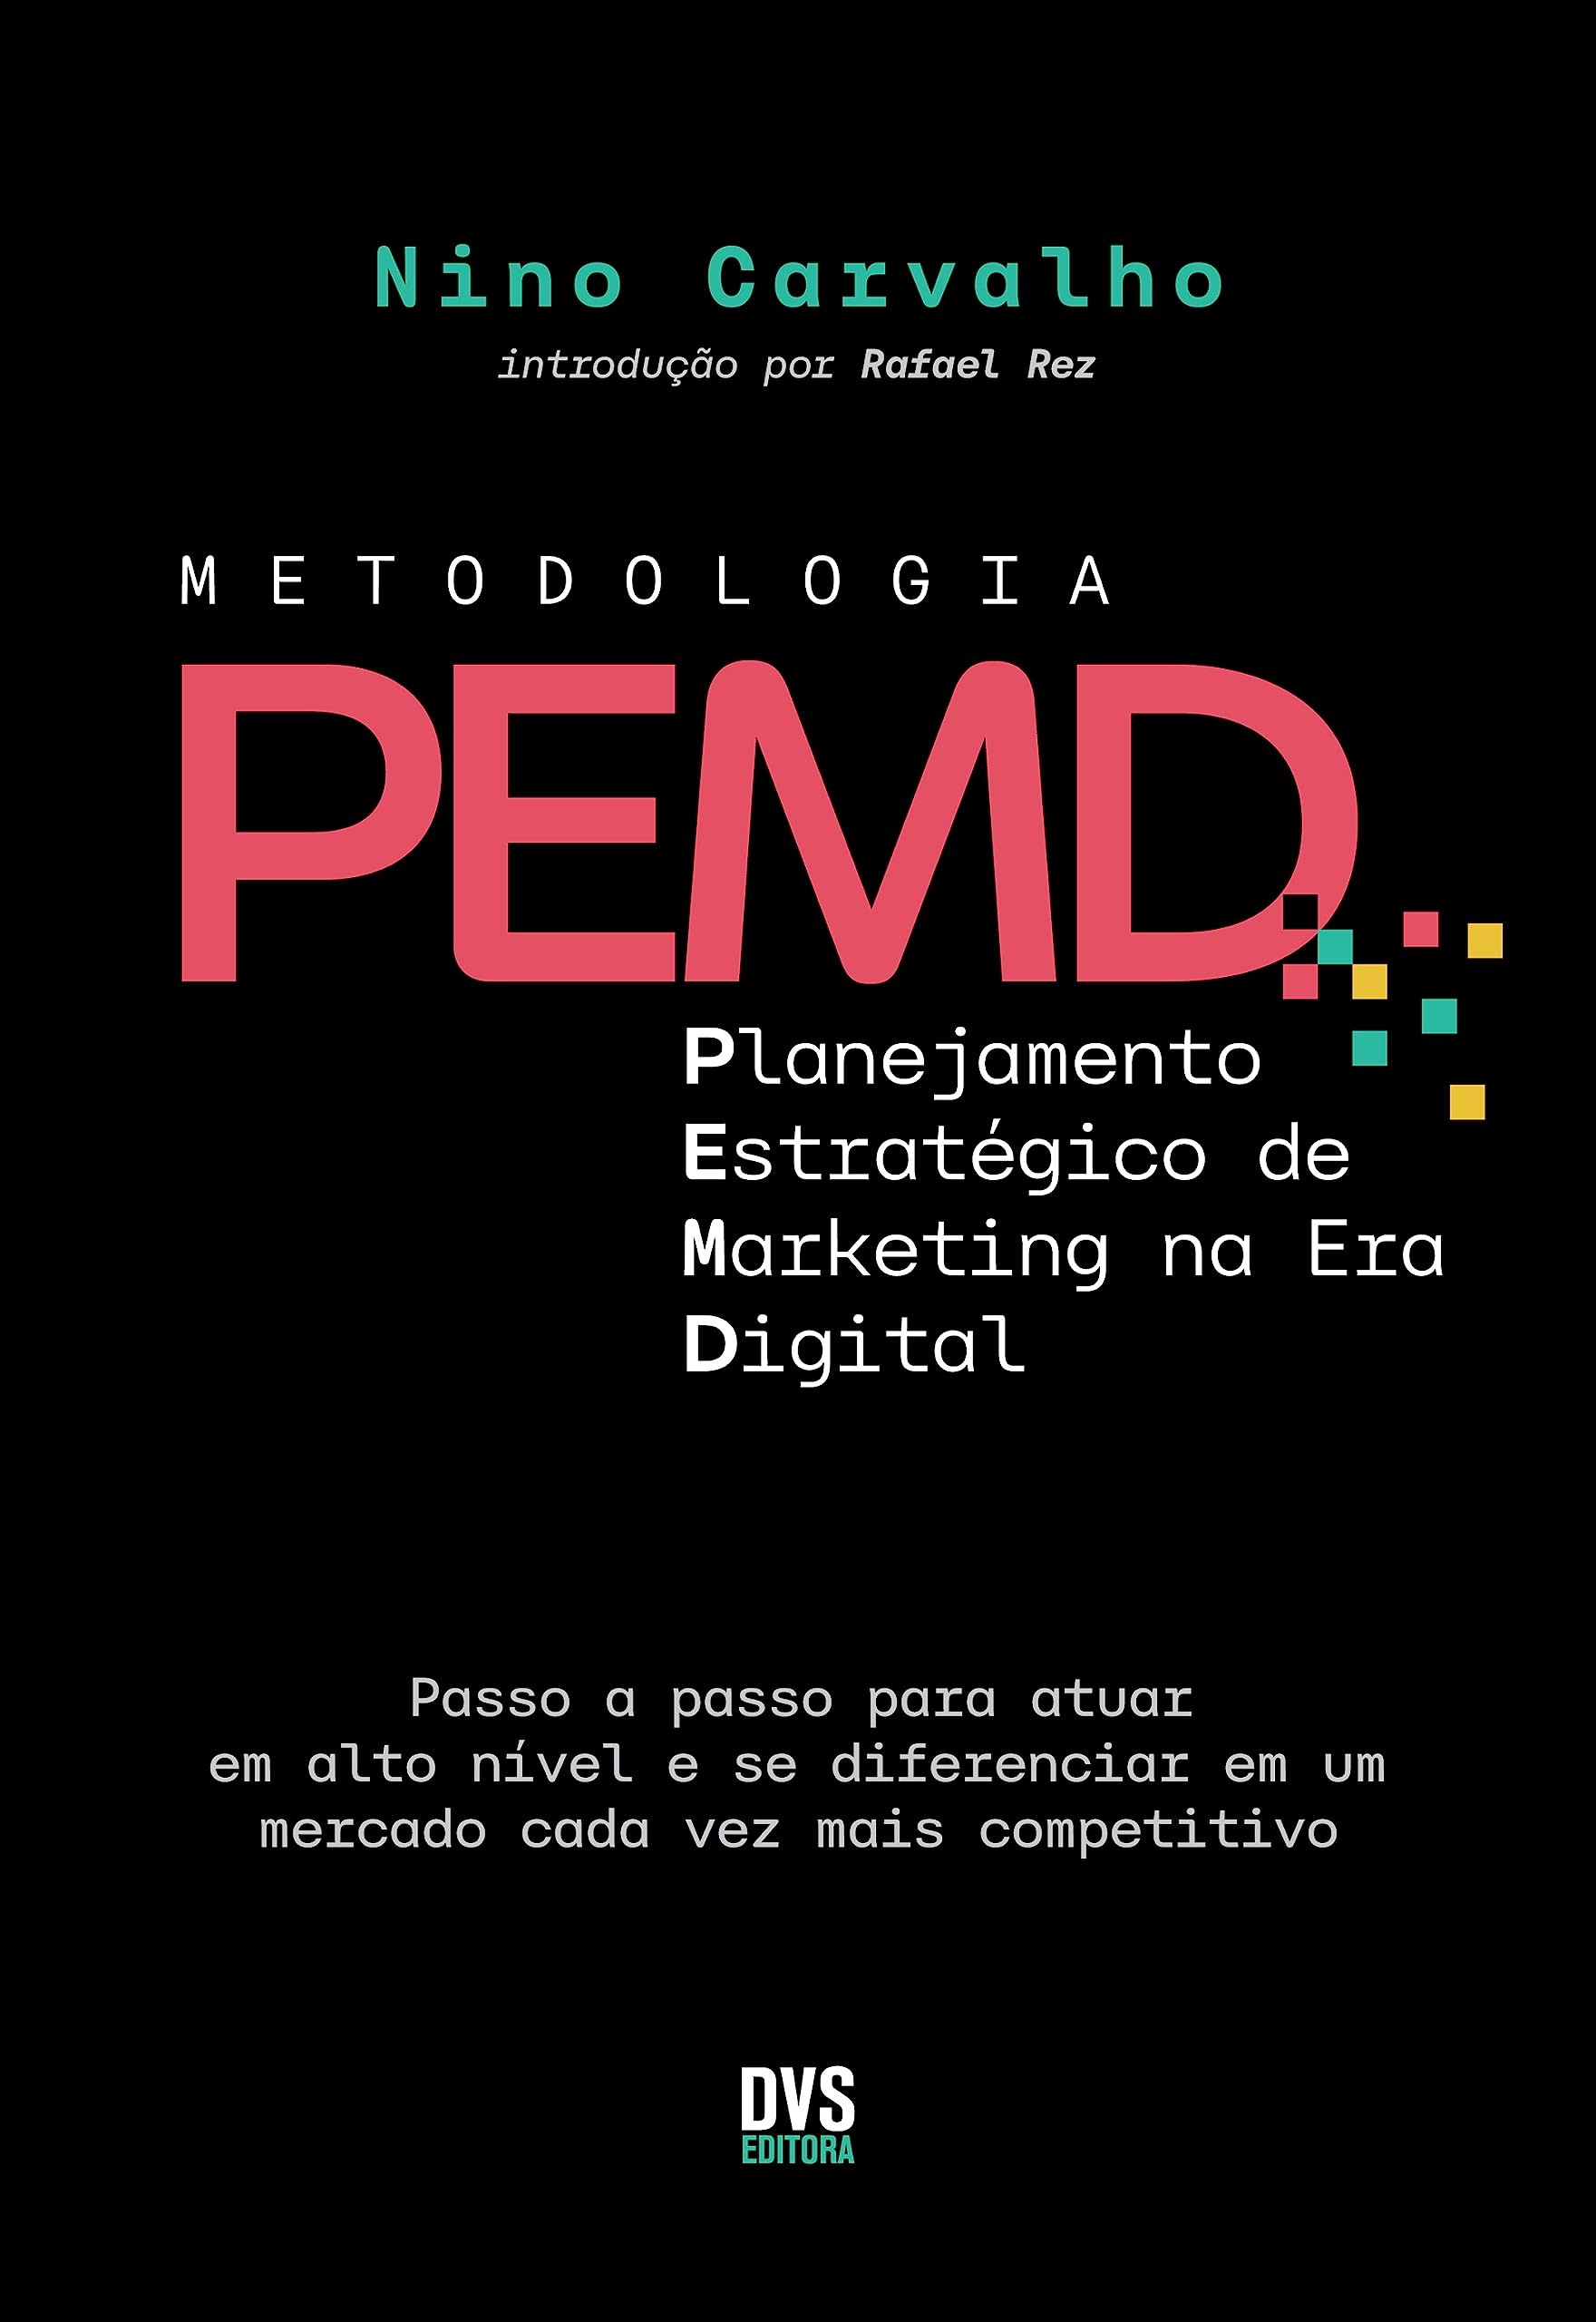 Metodologia PEMD: Planejamento Estratégico de Marketing na Era Digital - Passo a passo para atuar em alto nível e se diferenciar em um mercado cada vez mais competitivo (Portuguese Edition)